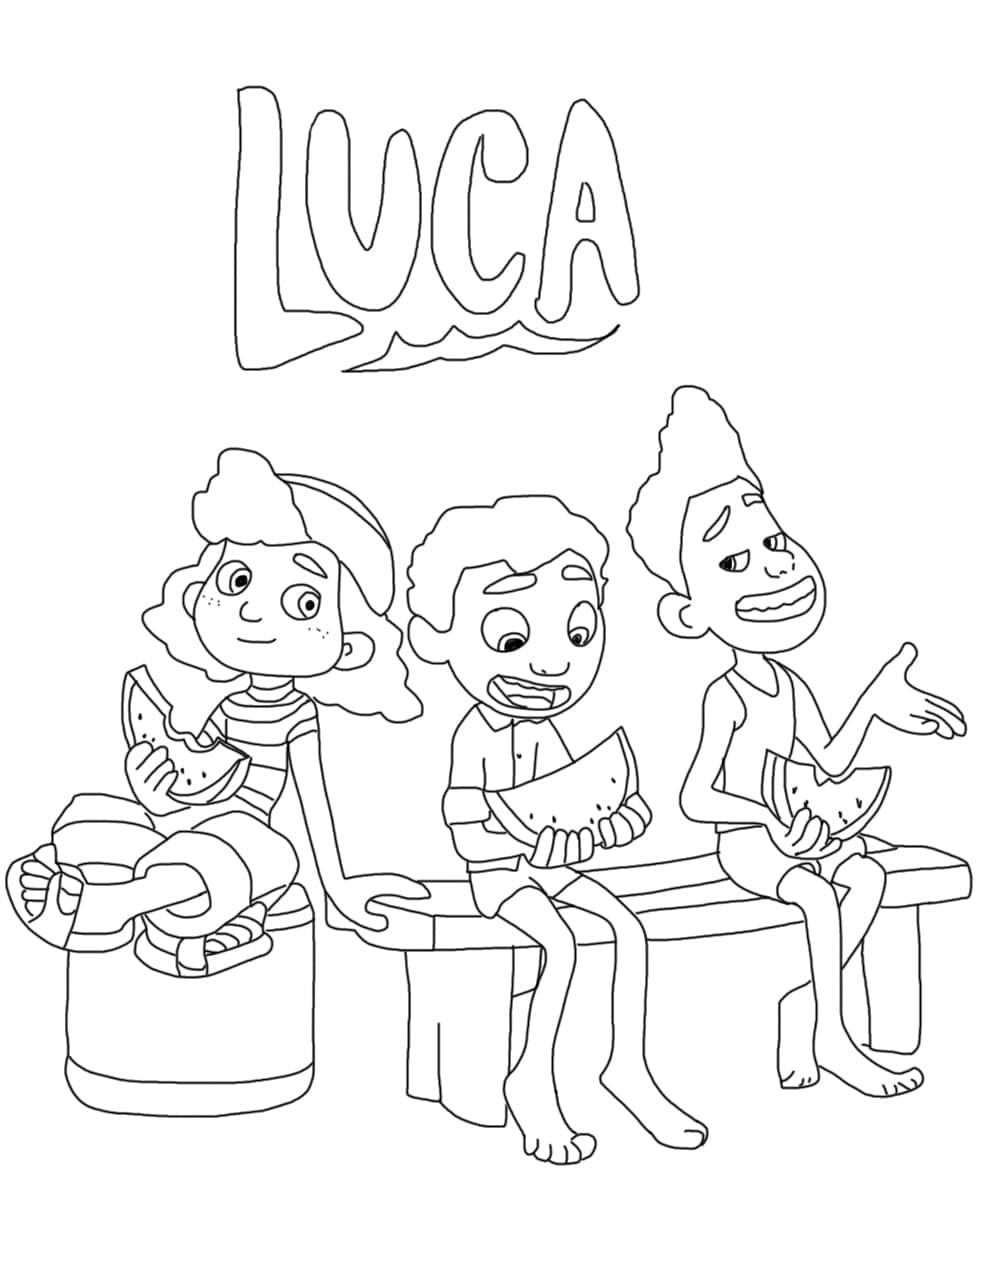 Luca med venner fargelegging